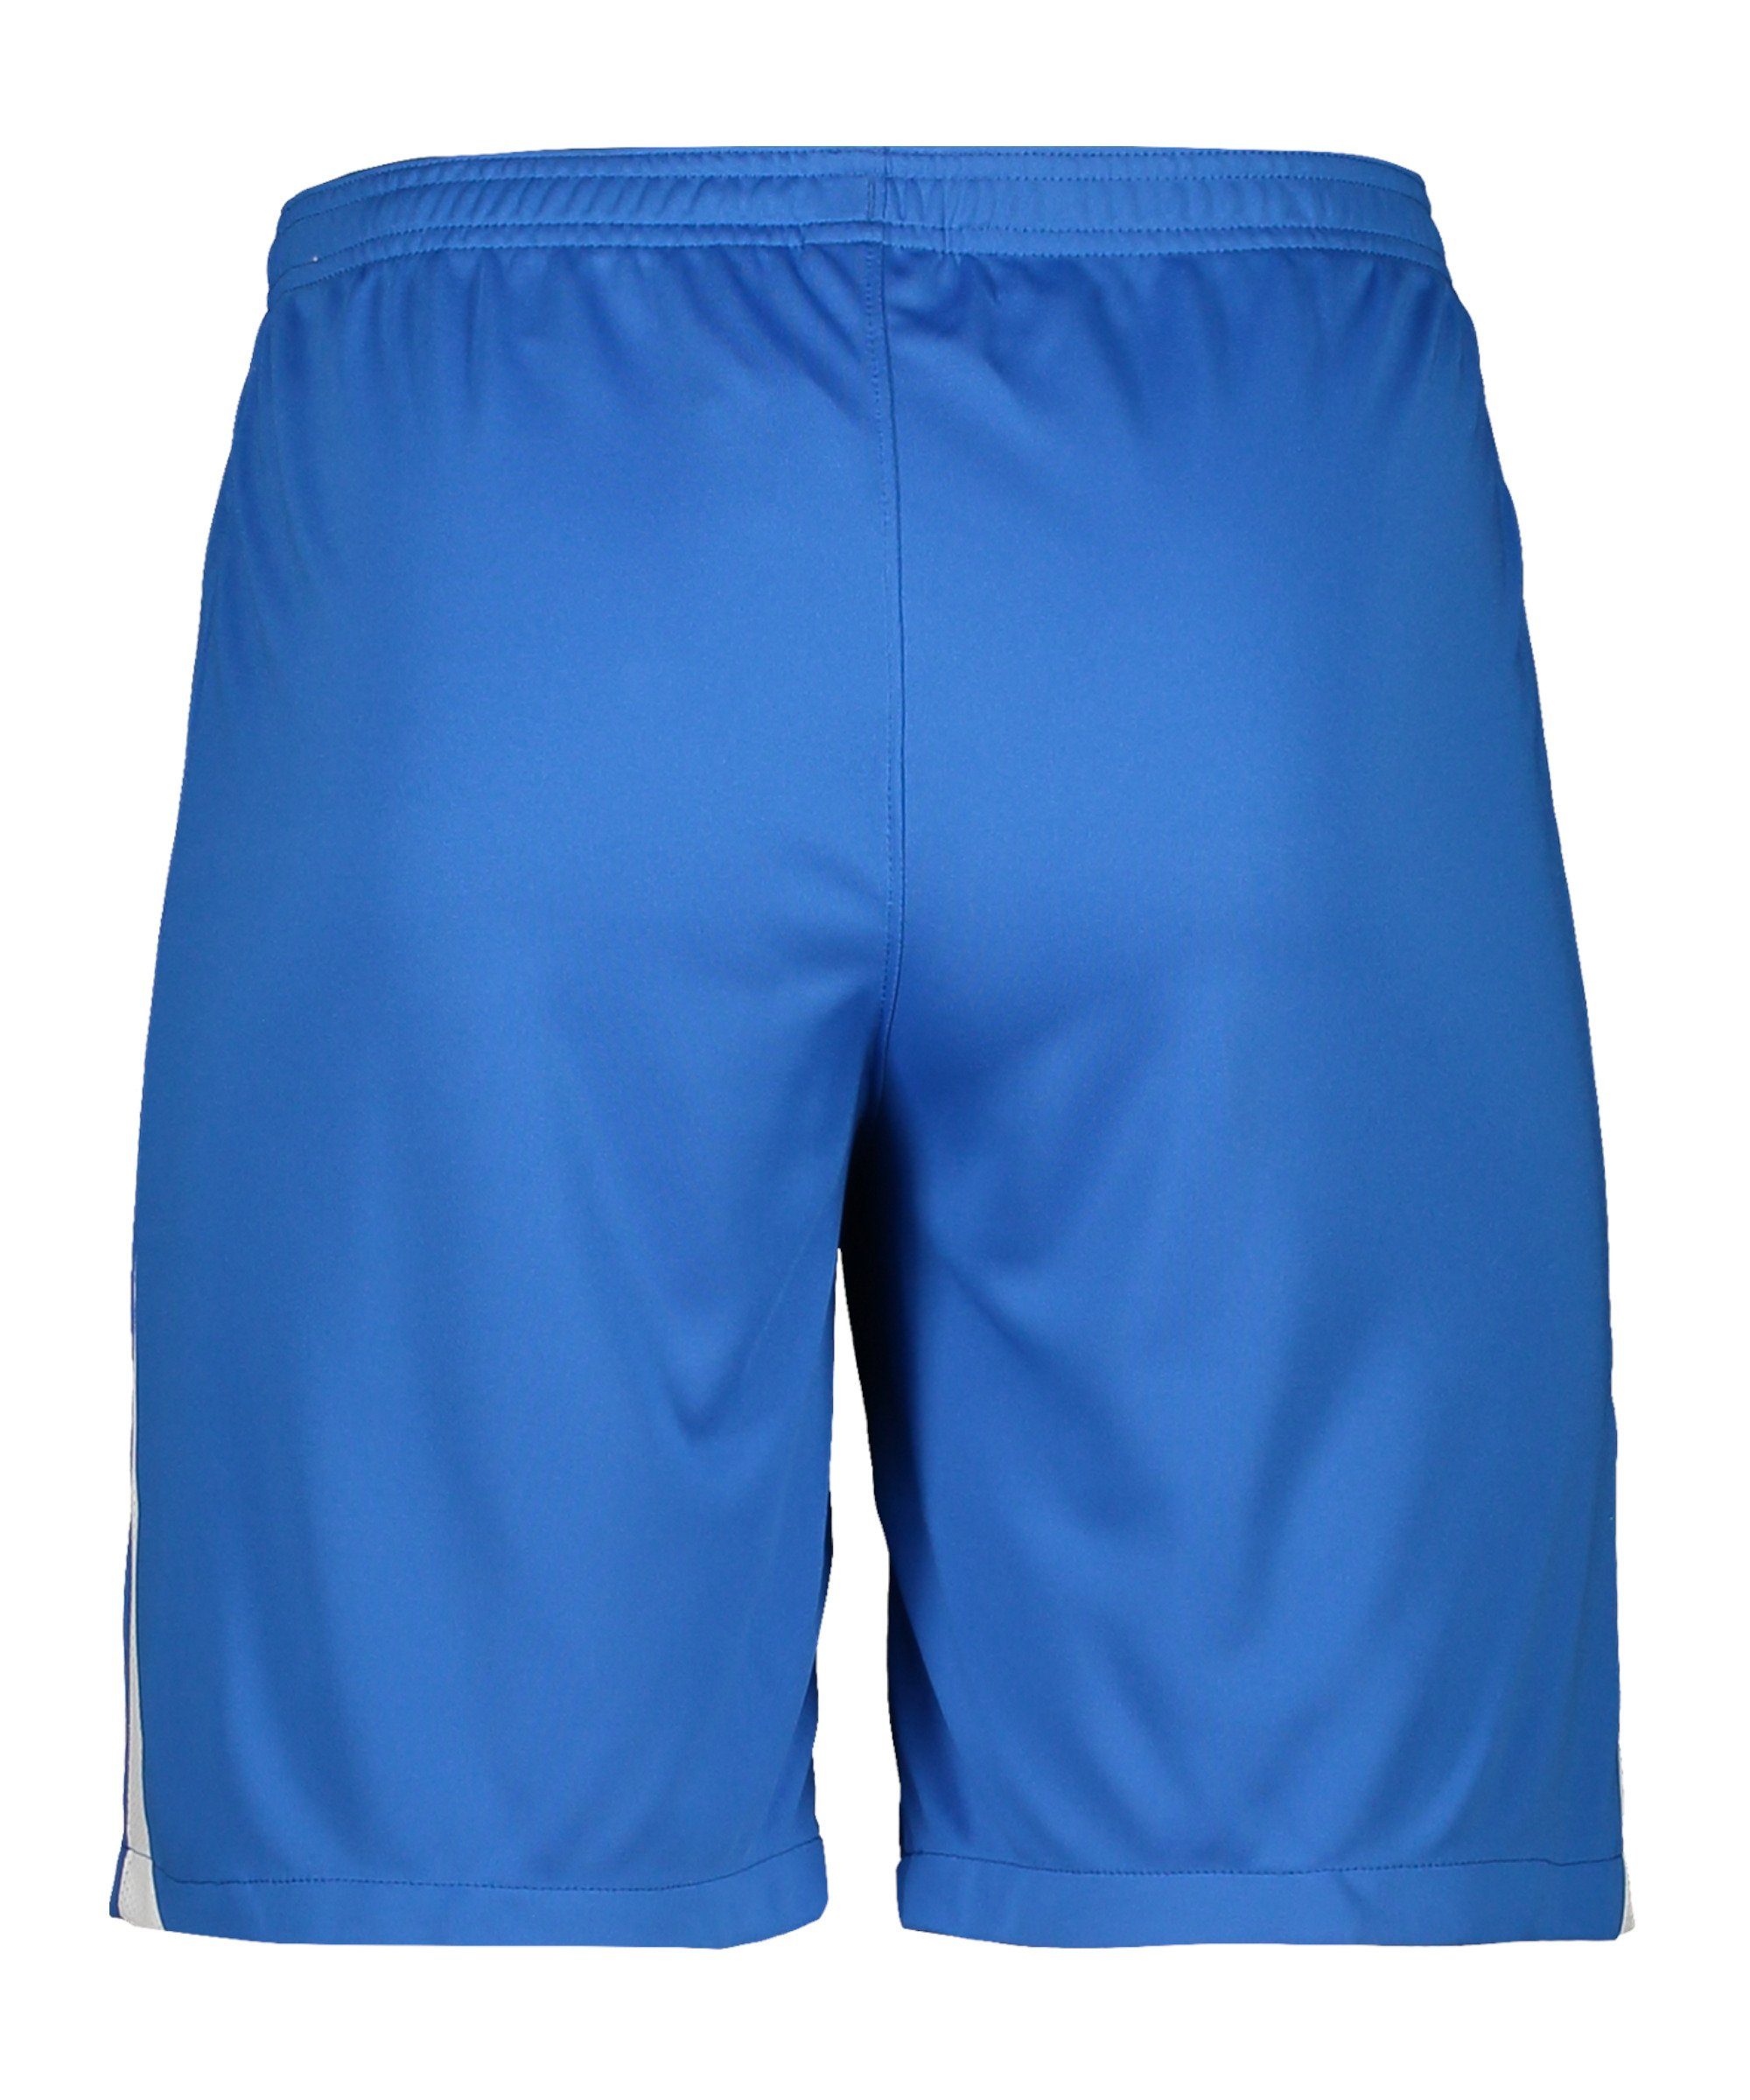 Nike League Sporthose III Short dunkelblauweissweiss